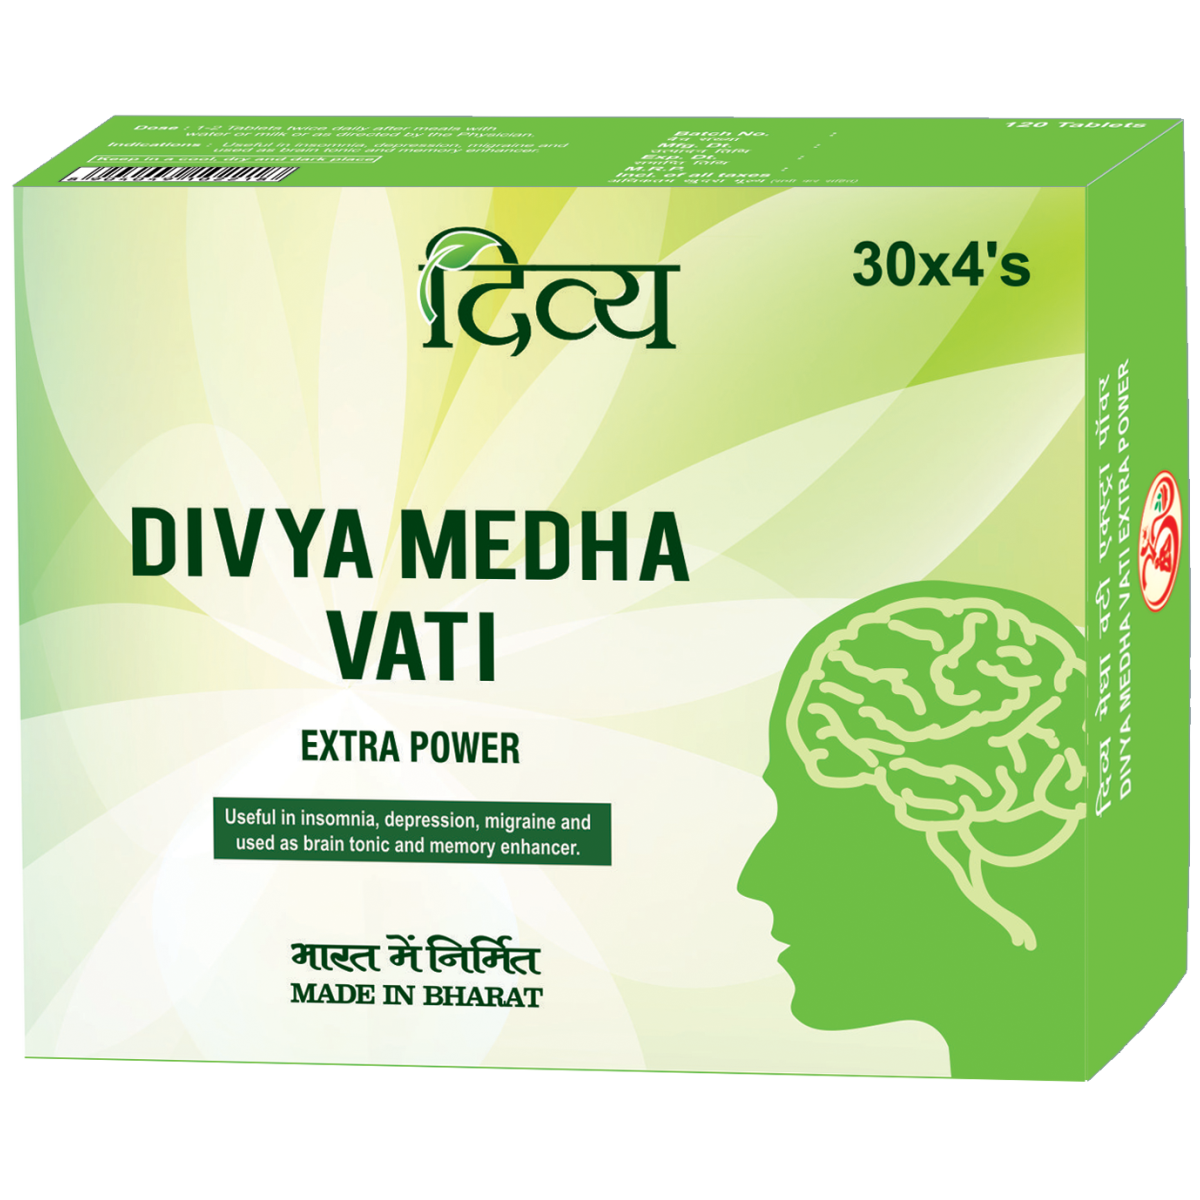 Divya Medha Vati - Extra Power